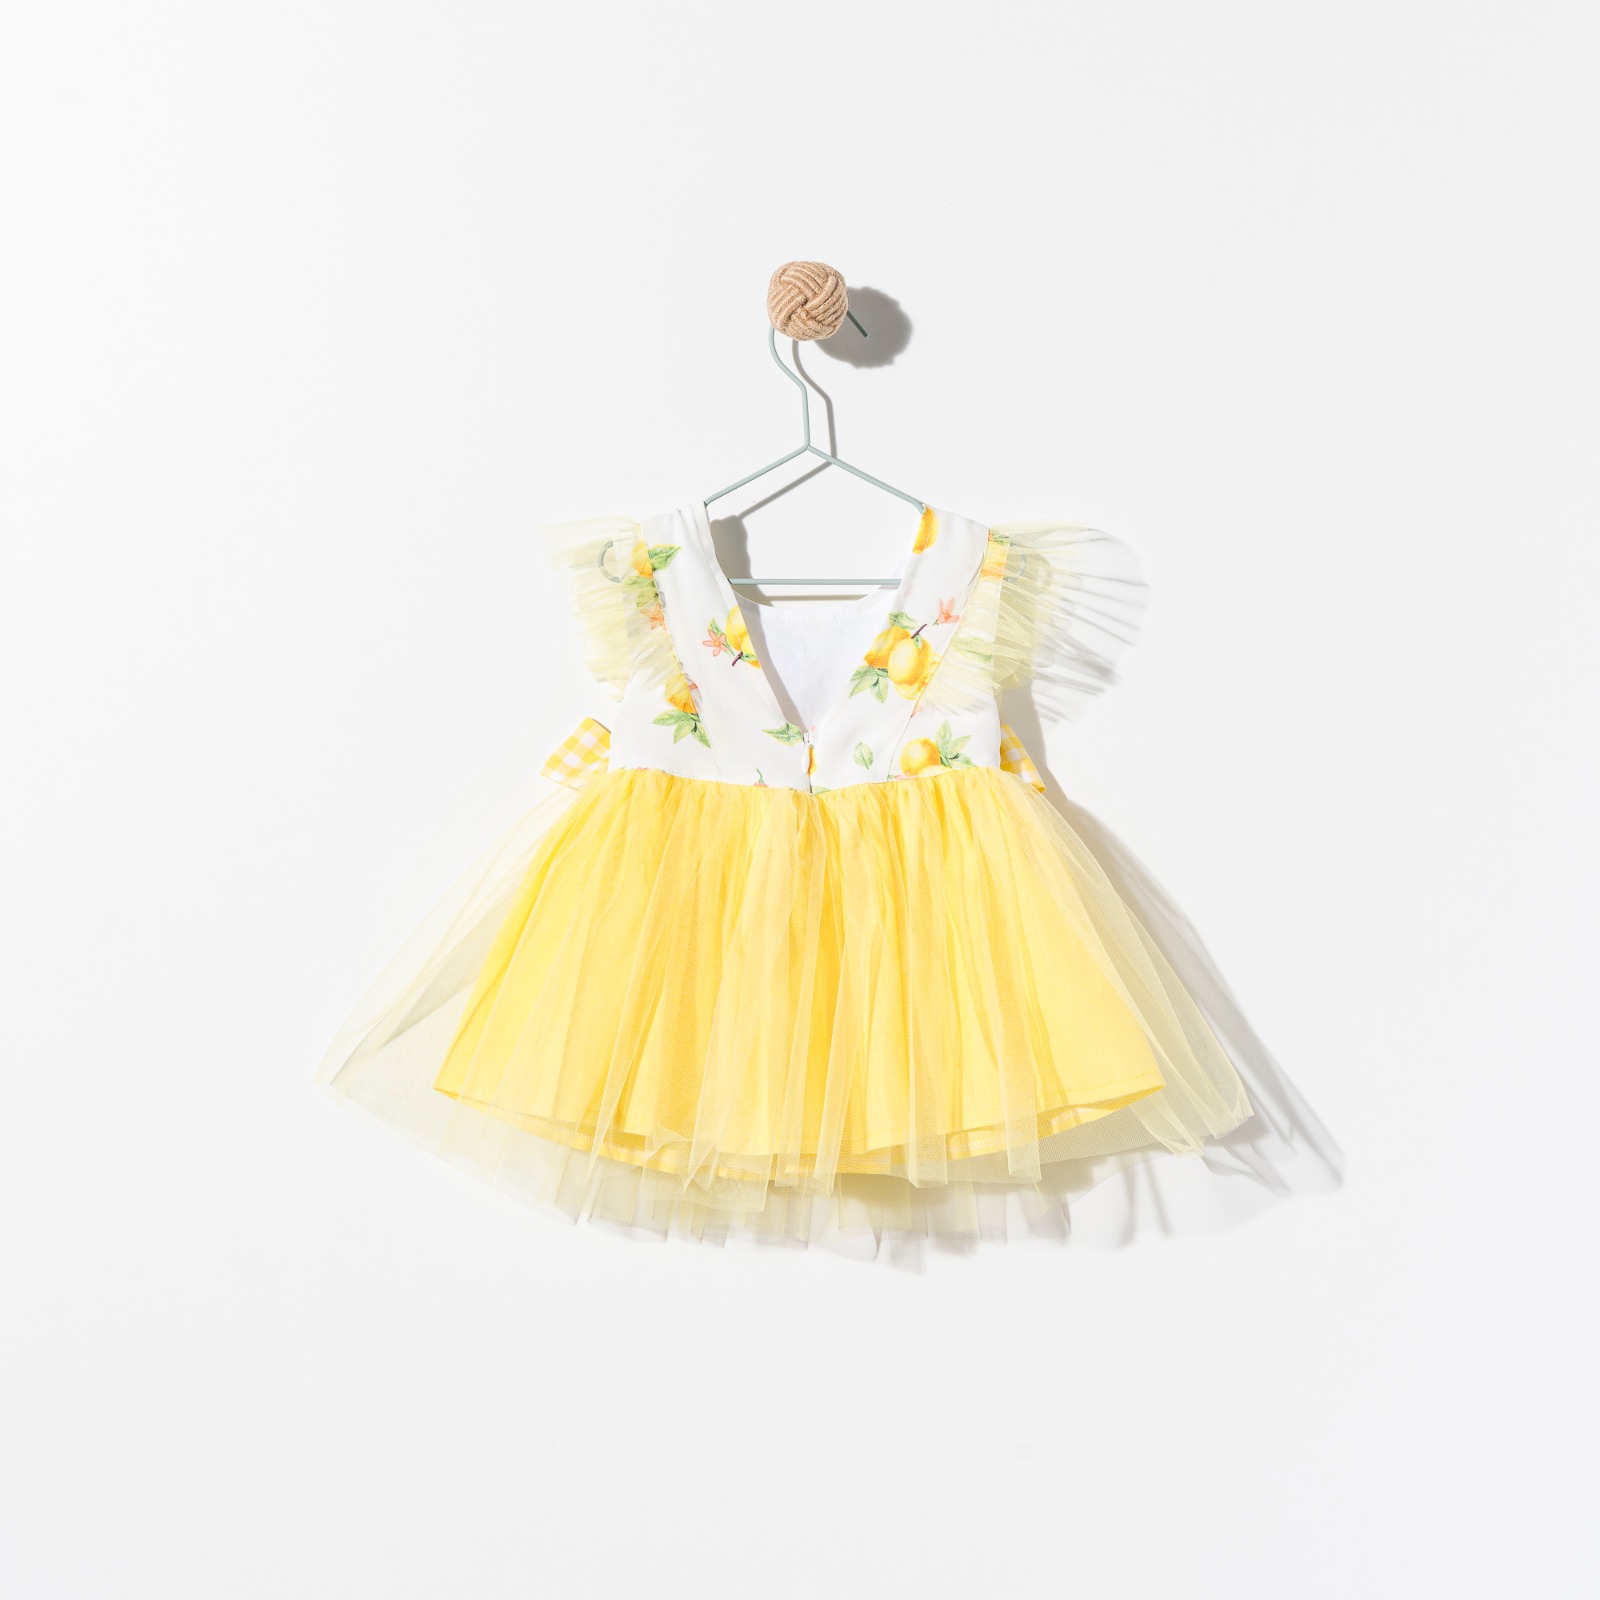 Limonlu Tütülü Fiyonk Detaylı Kız Bebek Elbise